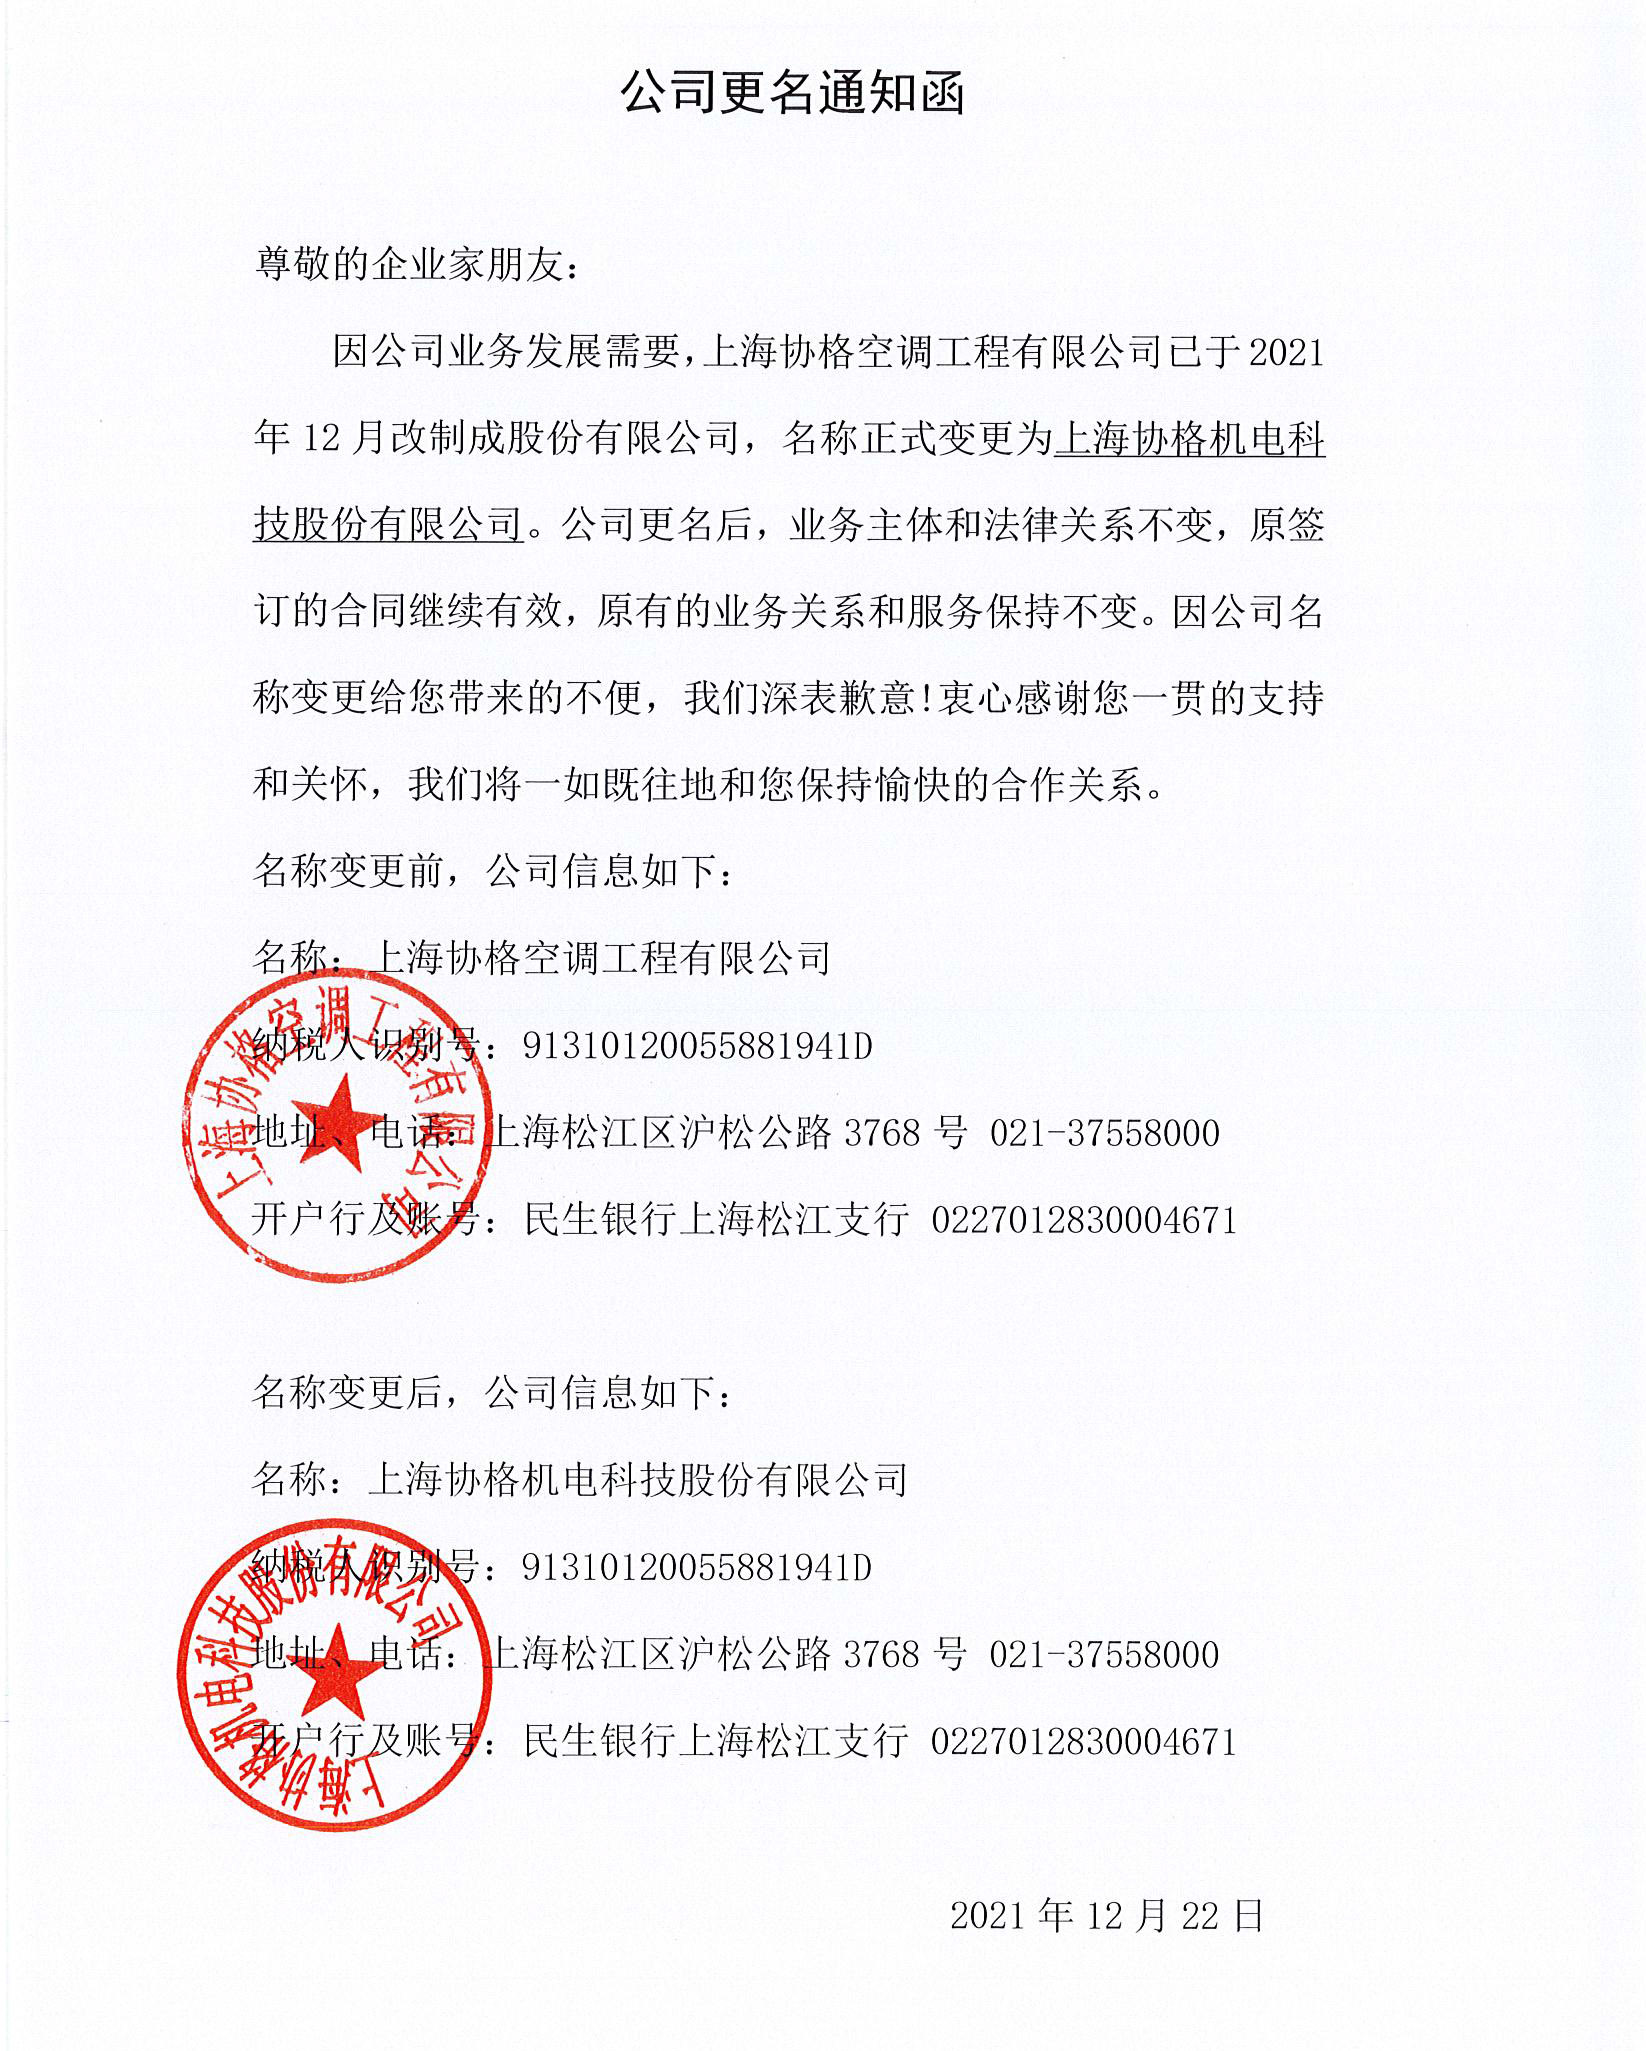 上海协格机电科技股份有限公司变更函